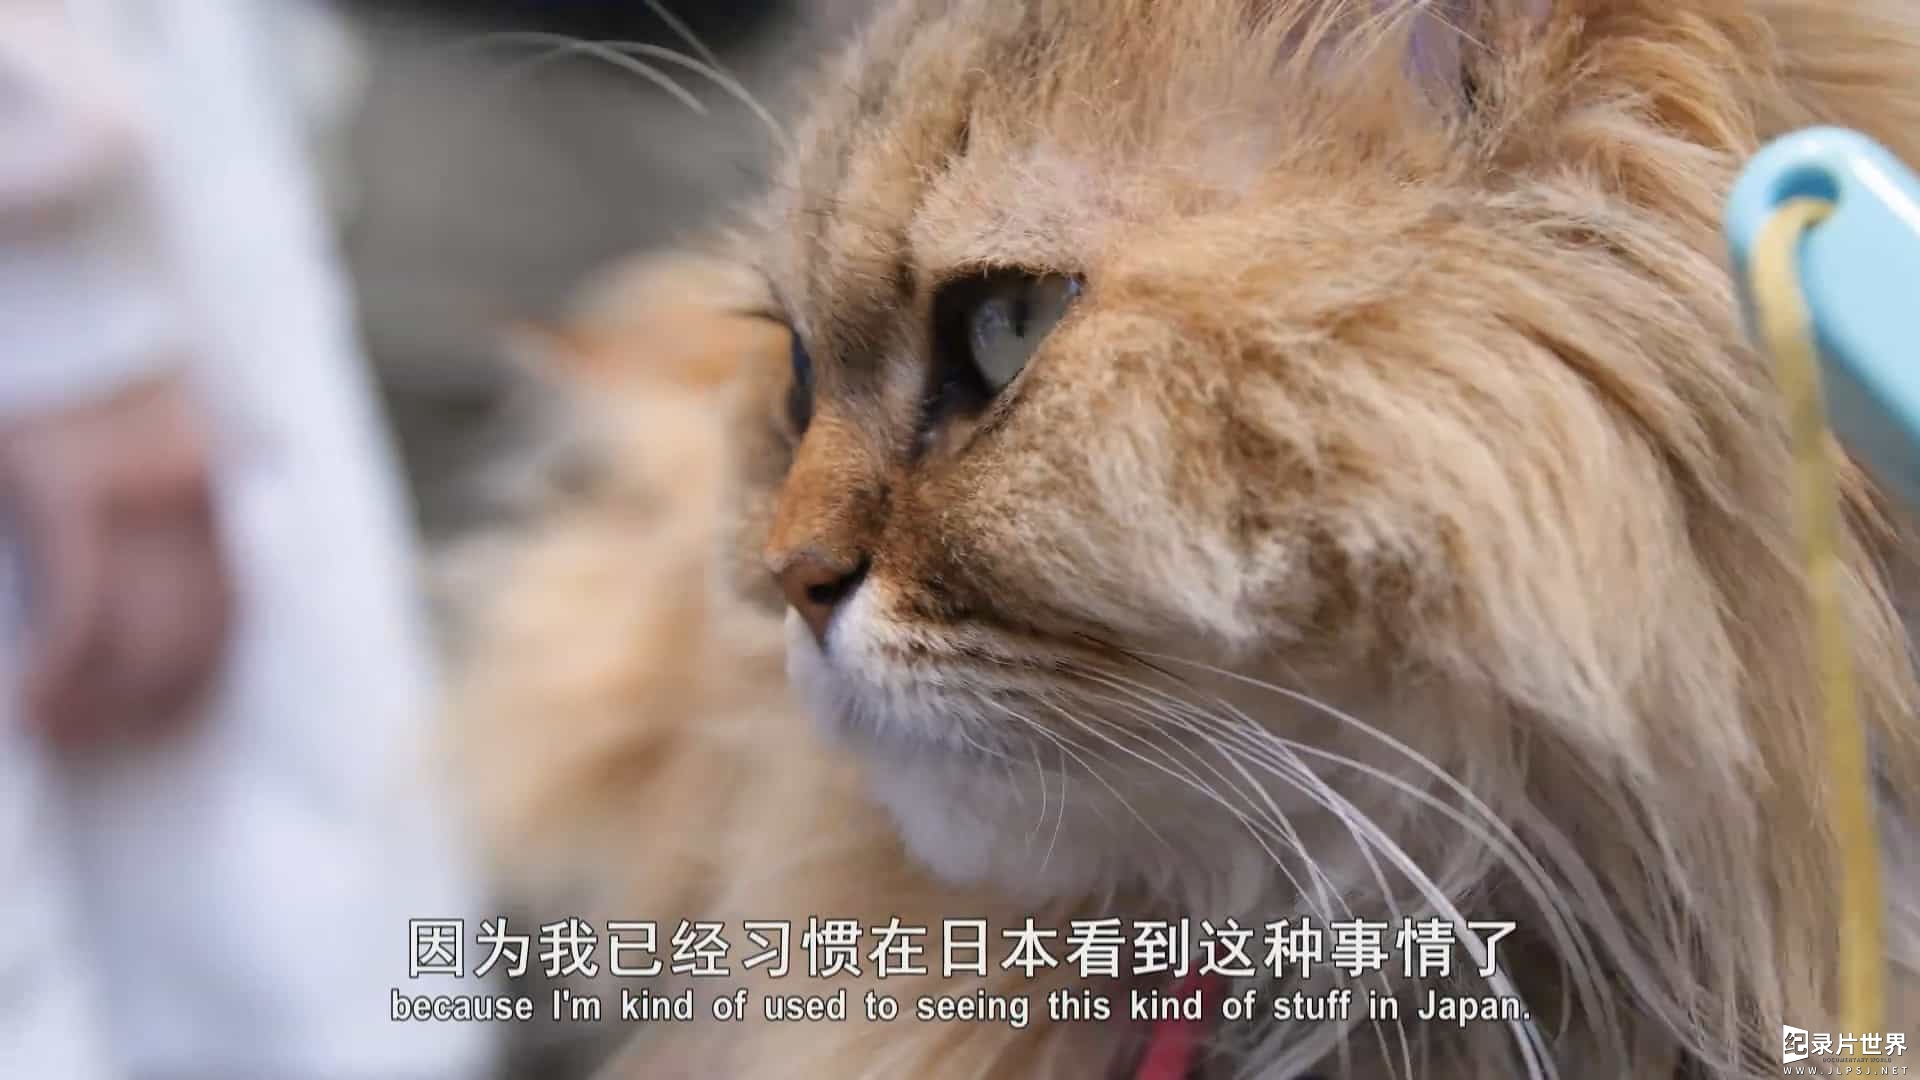 日本猫文化纪录片/萌宠系列《猫咪国度 Cat Nation: A Film About Japan’s Crazy Cat Culture 2017》